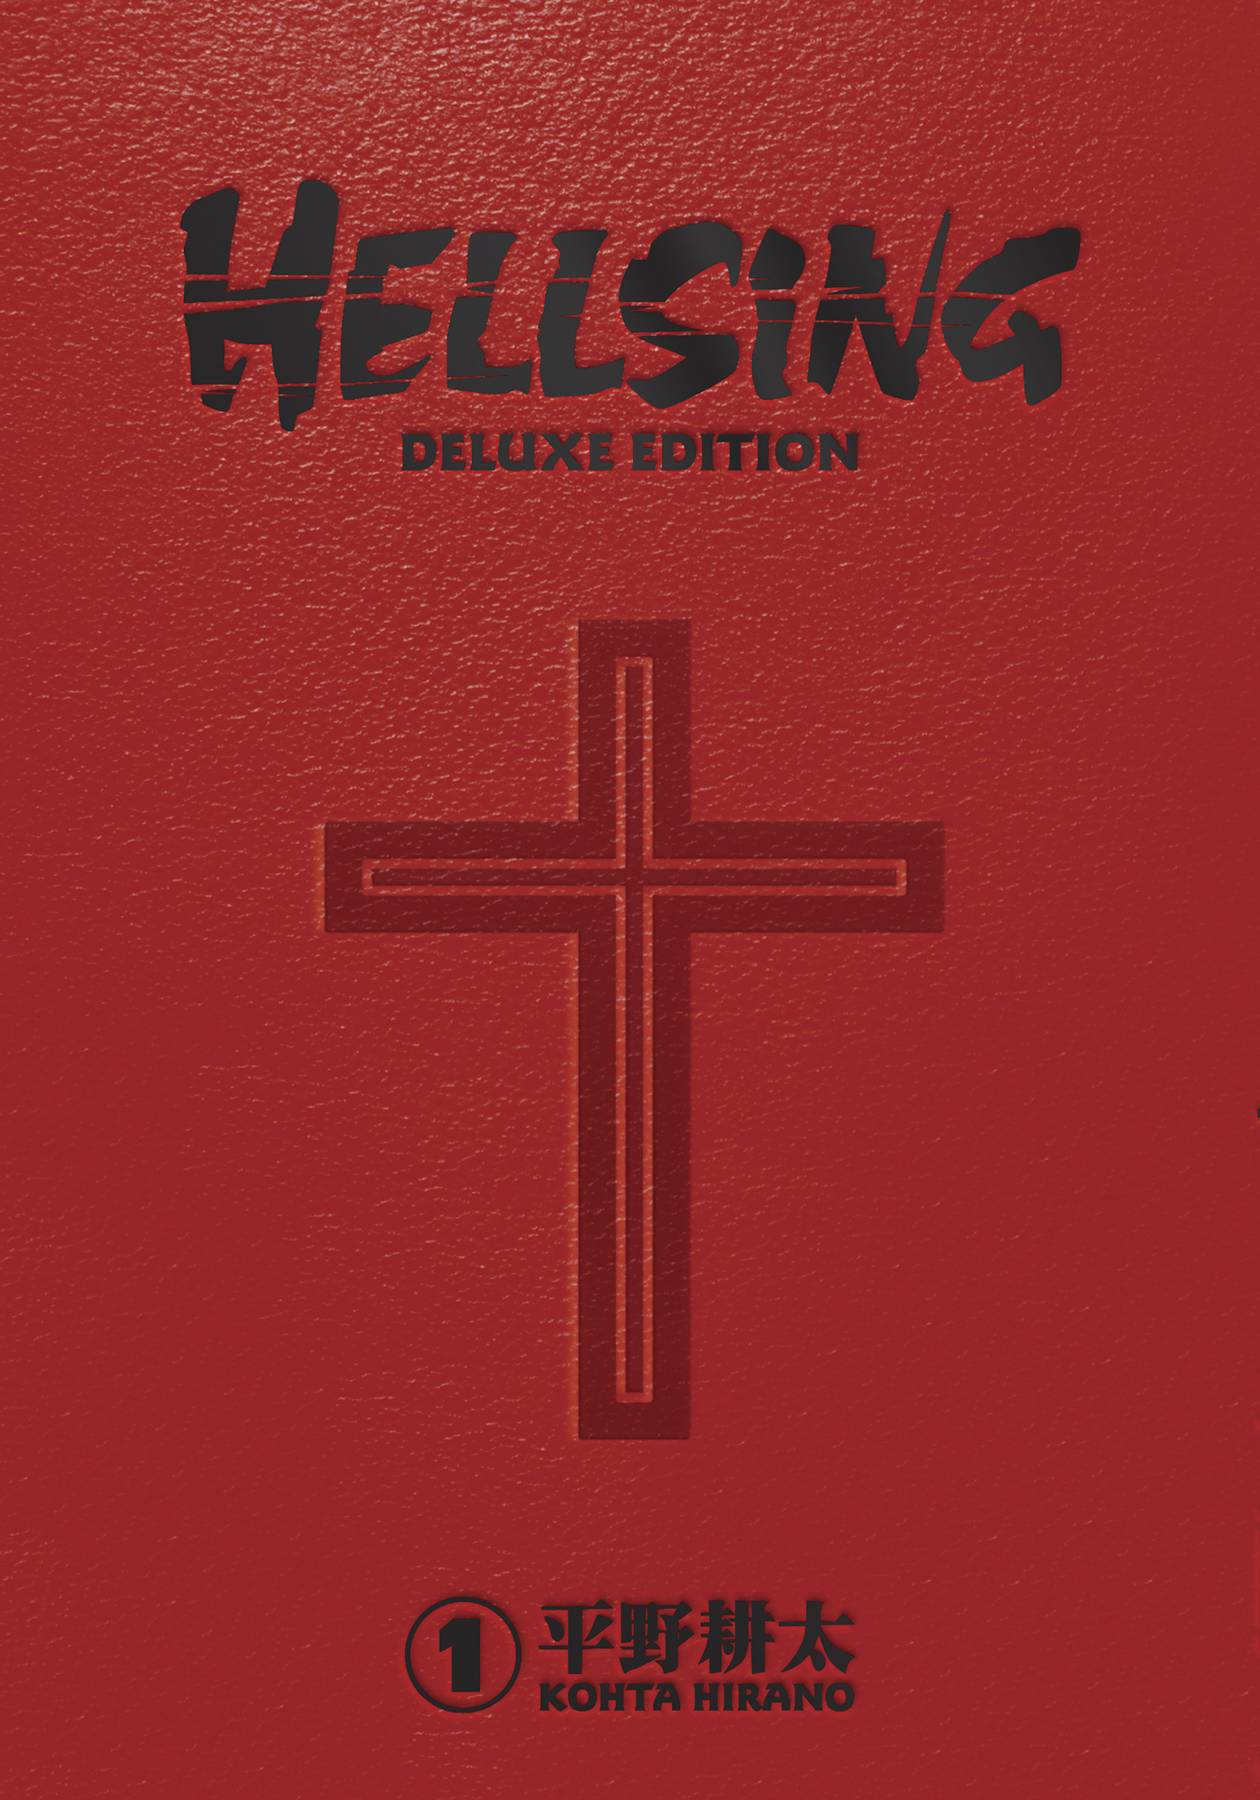 HELLSING DELUXE EDITION HC VOL 01 (MR)